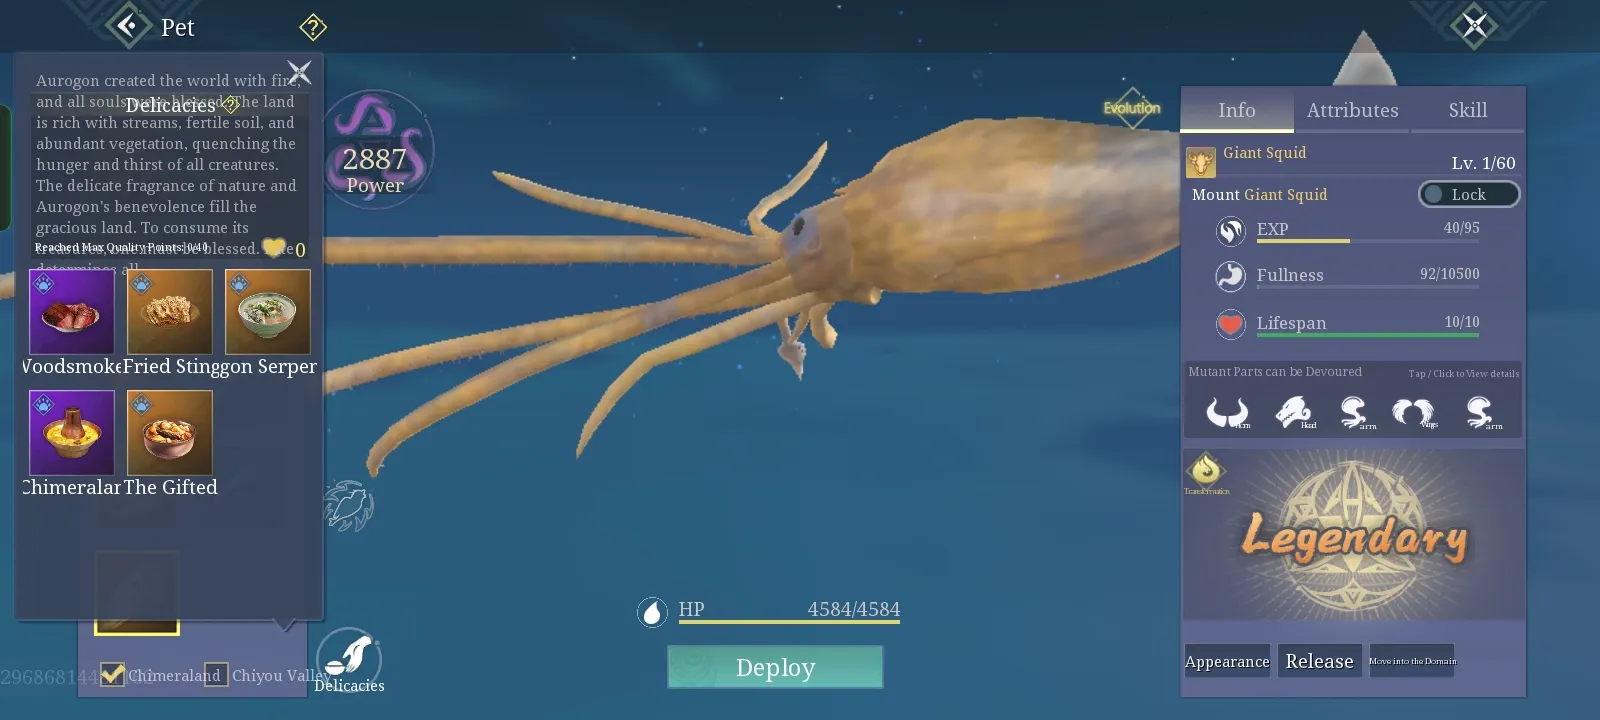 Monster giant squid